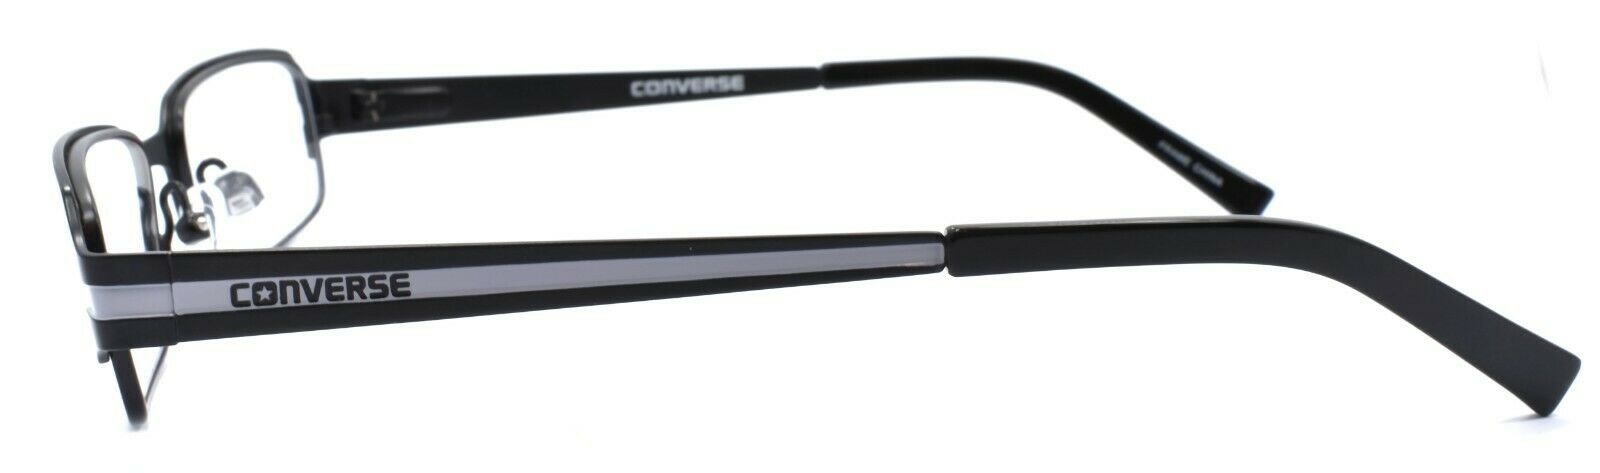 3-CONVERSE I Don't Know Kids Eyeglasses Frames 49-17-135 Black + CASE-751286138351-IKSpecs